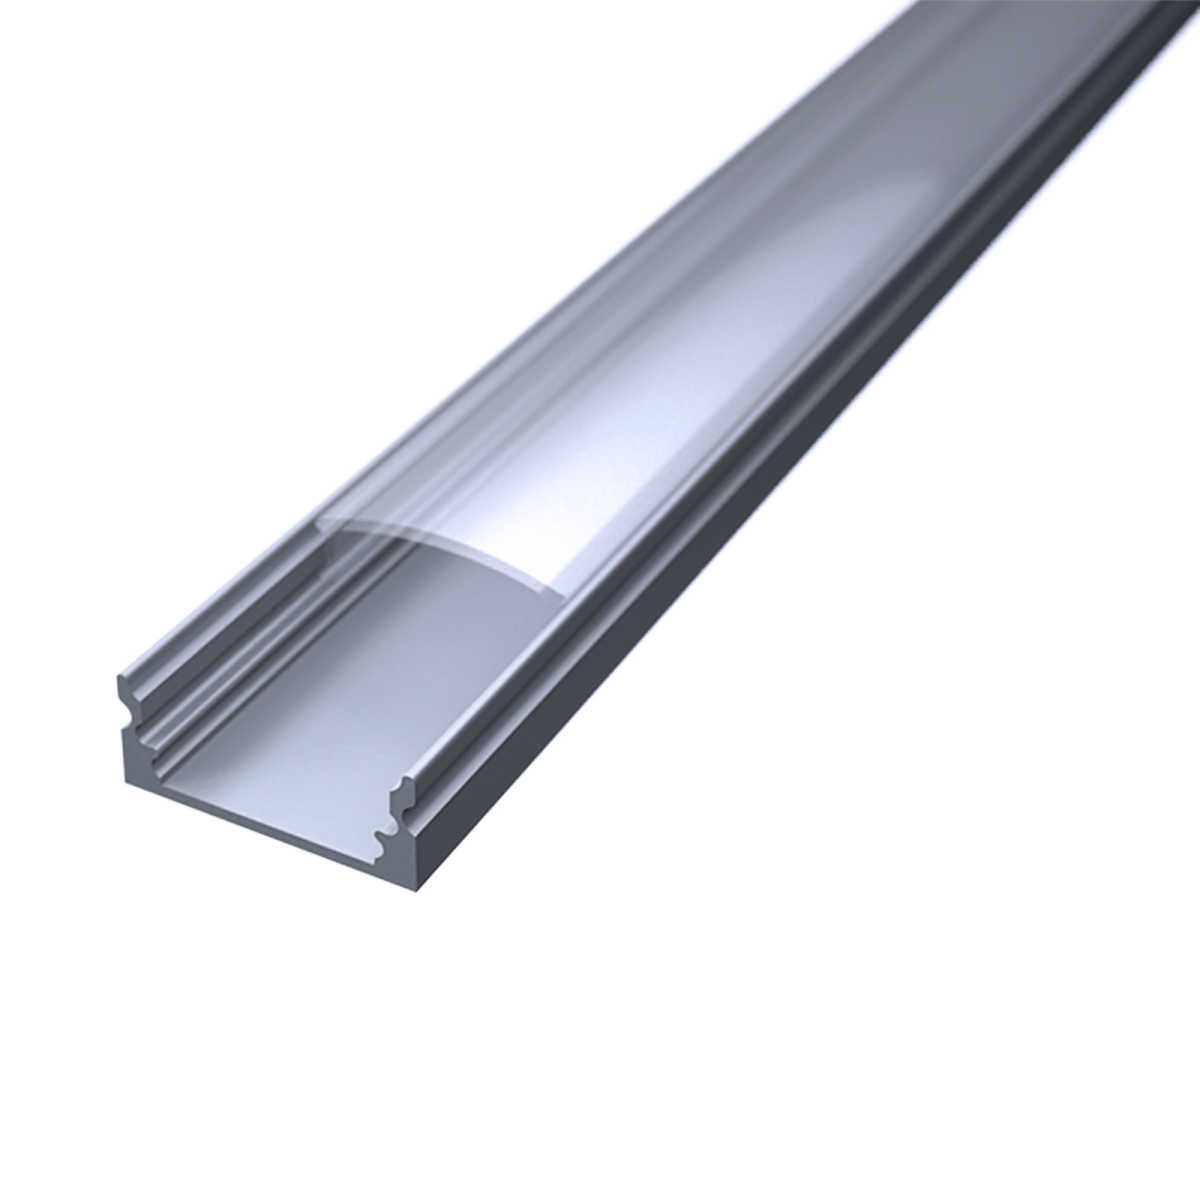 LED Flachprofil "Slim-Line" | Abdeckung transparent | Zuschnitt auf 11cm |